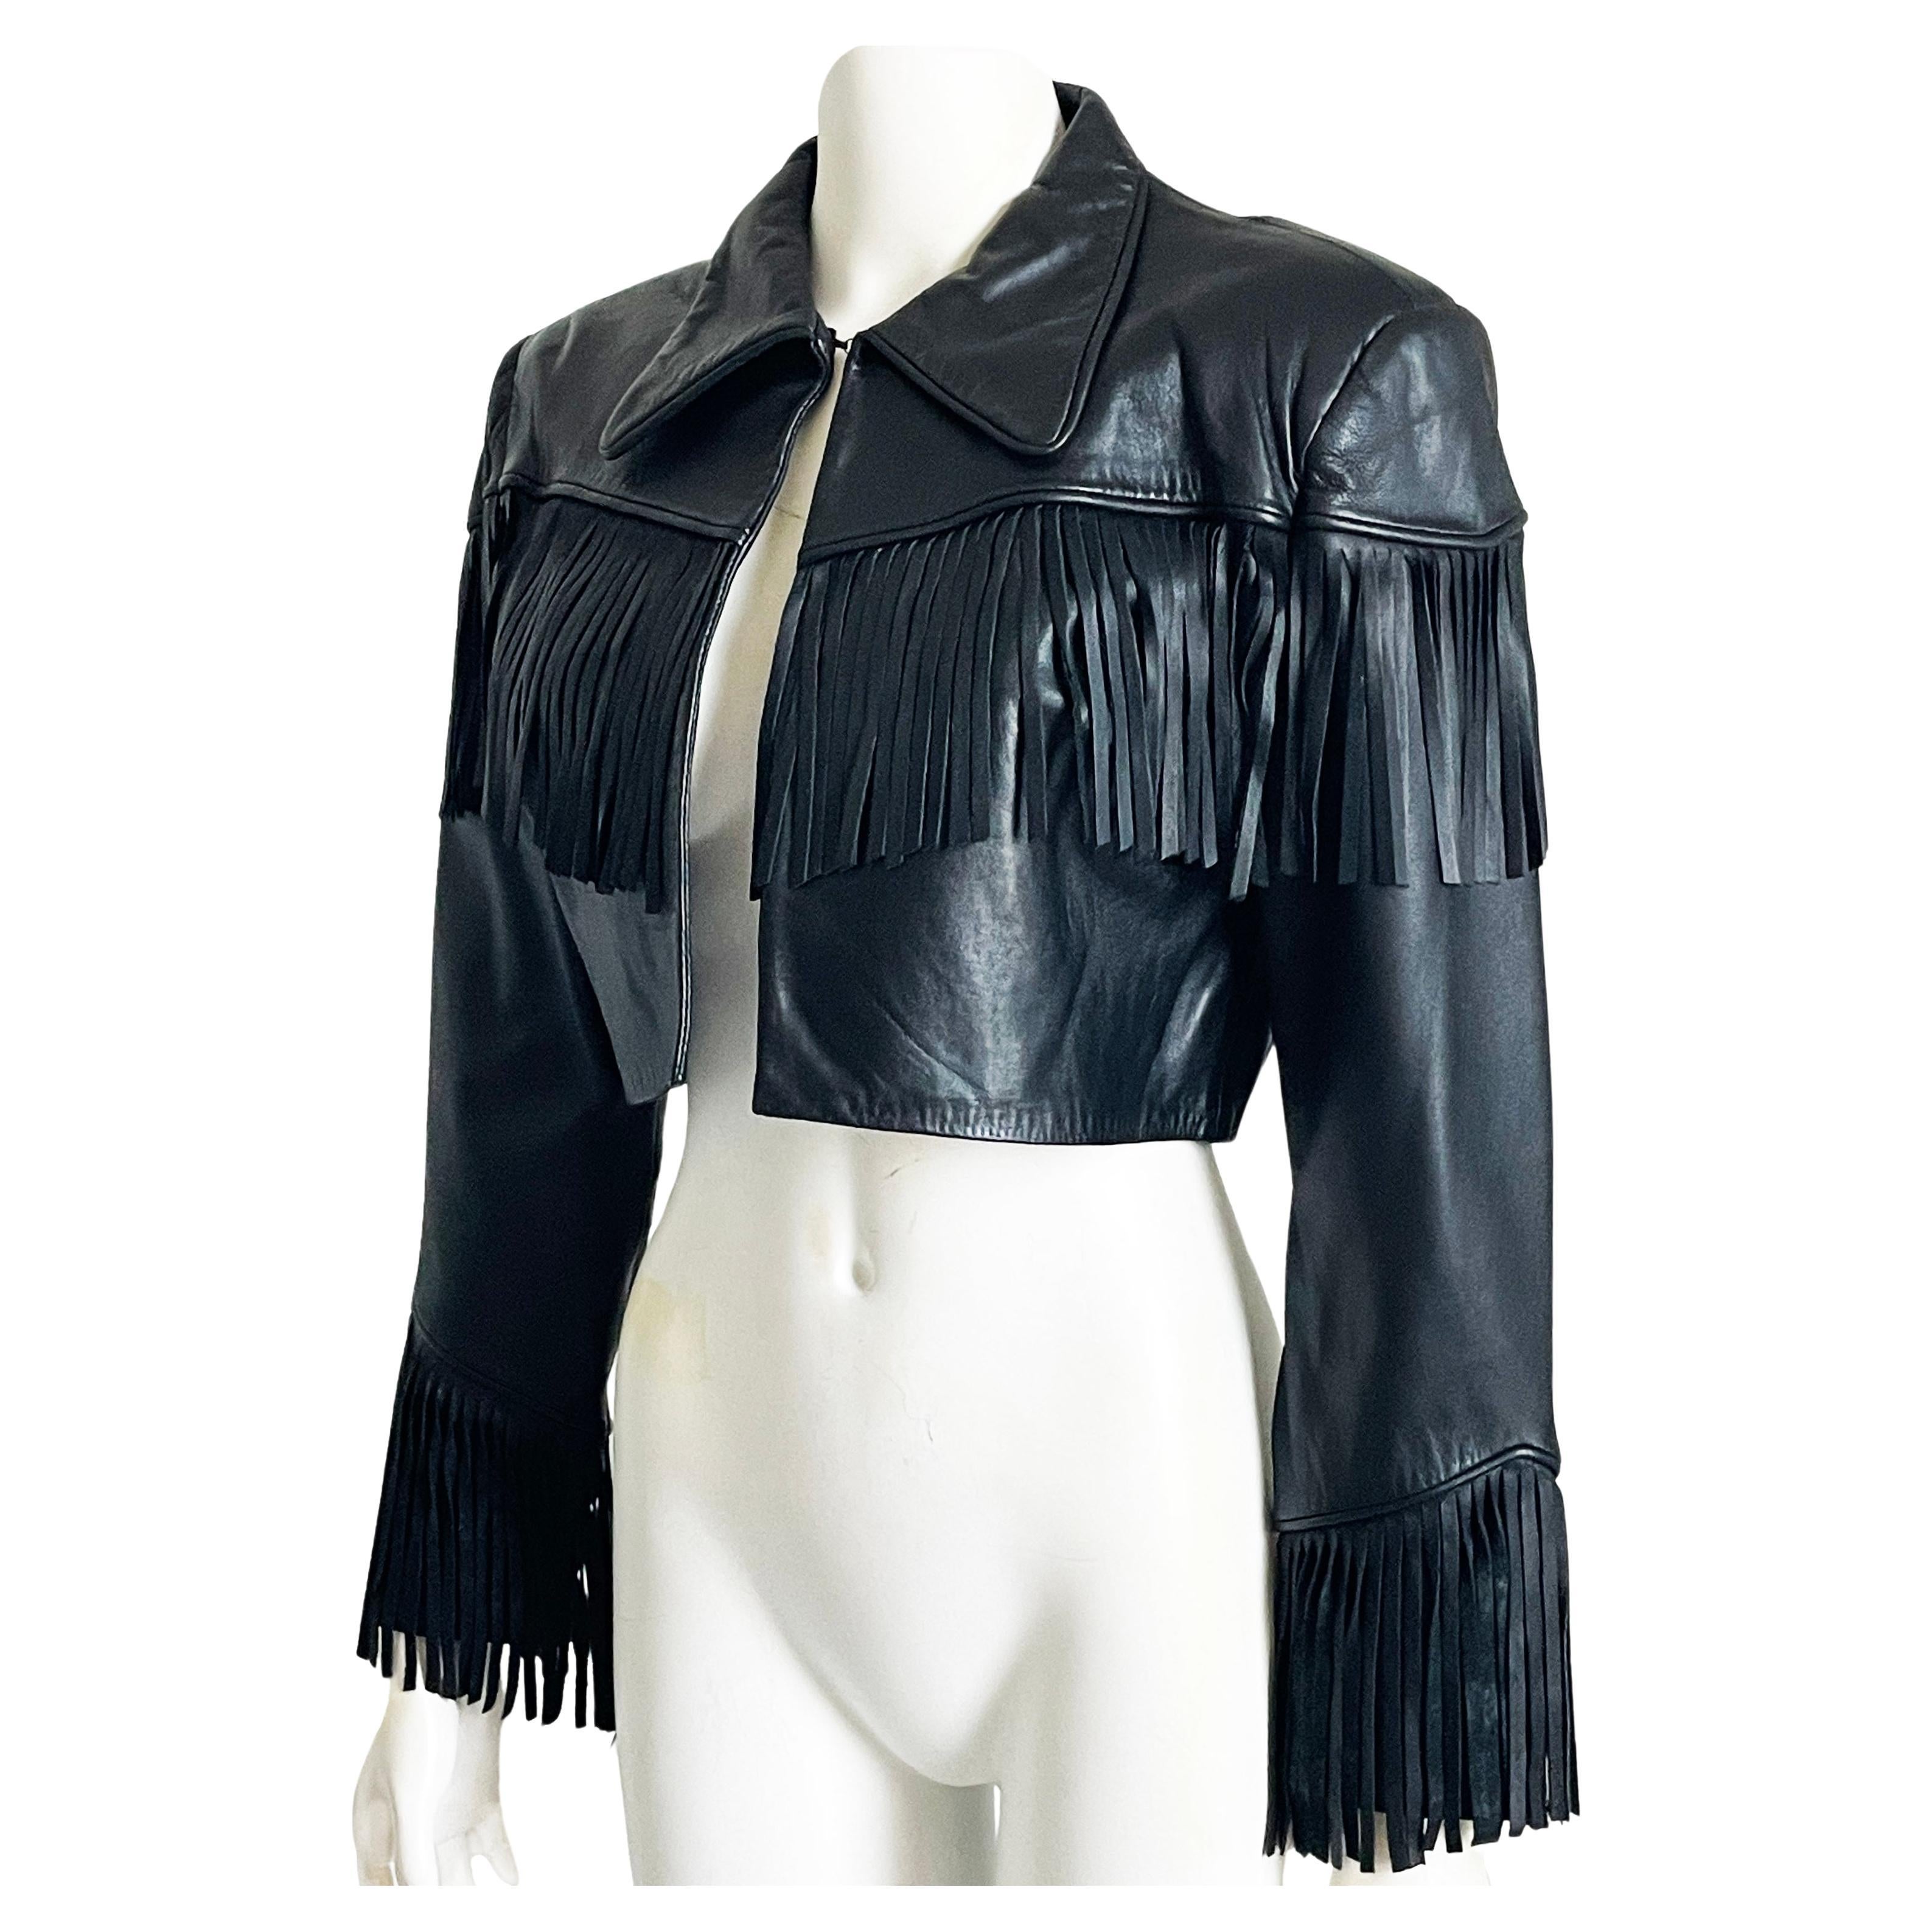 Norma Kamali - Veste en cuir noire à franges courtes vintage des années 1990 - Rare rocker Chic en vente